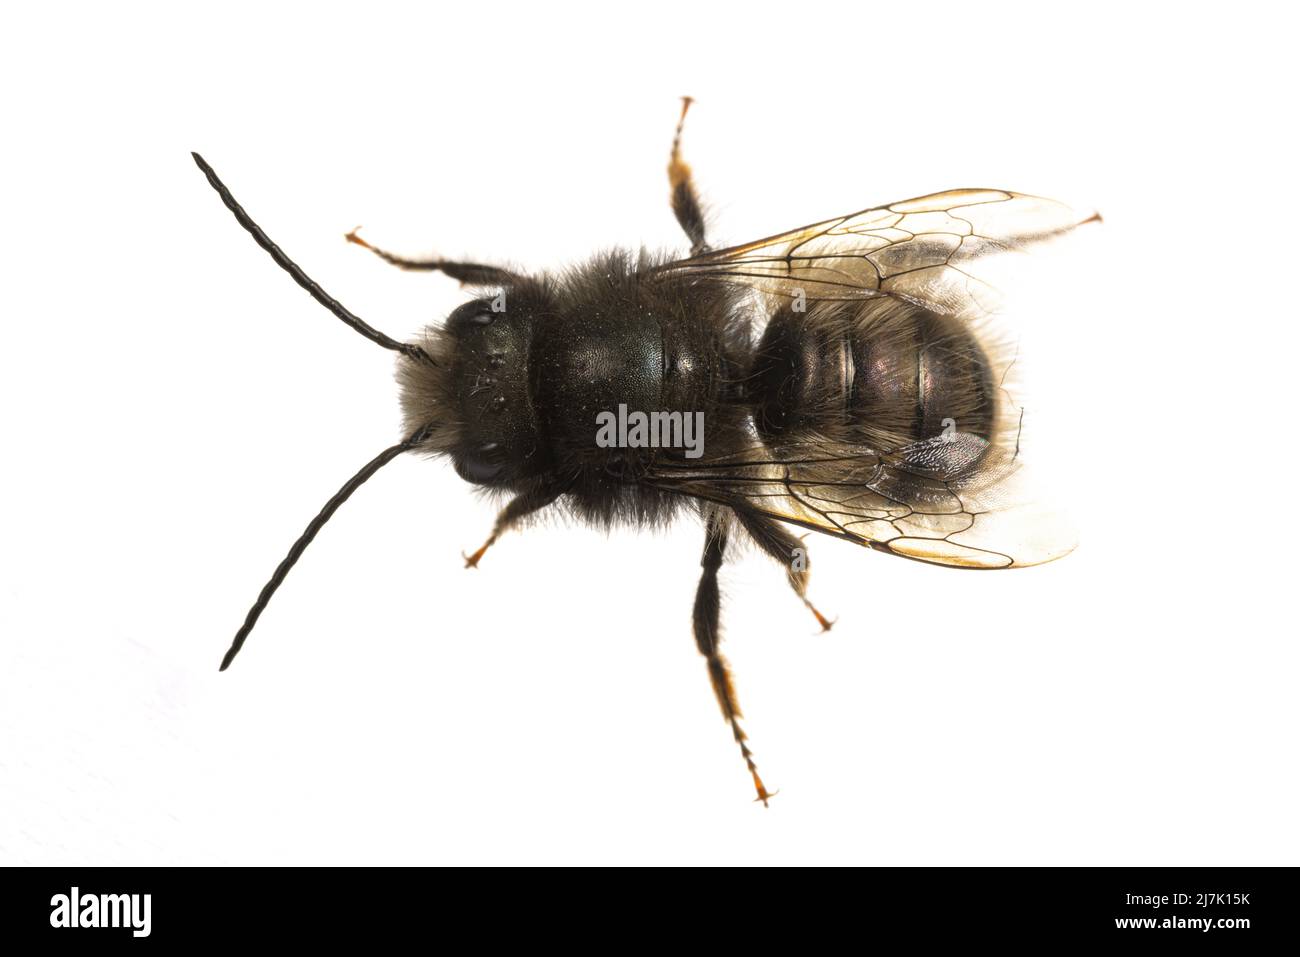 Insectes d'europe - abeilles: Vue de dessus de l'abeille mâle Osmia cornuta Orchard européen (gehoernte Mauerbiene allemand) isolée sur fond blanc Banque D'Images